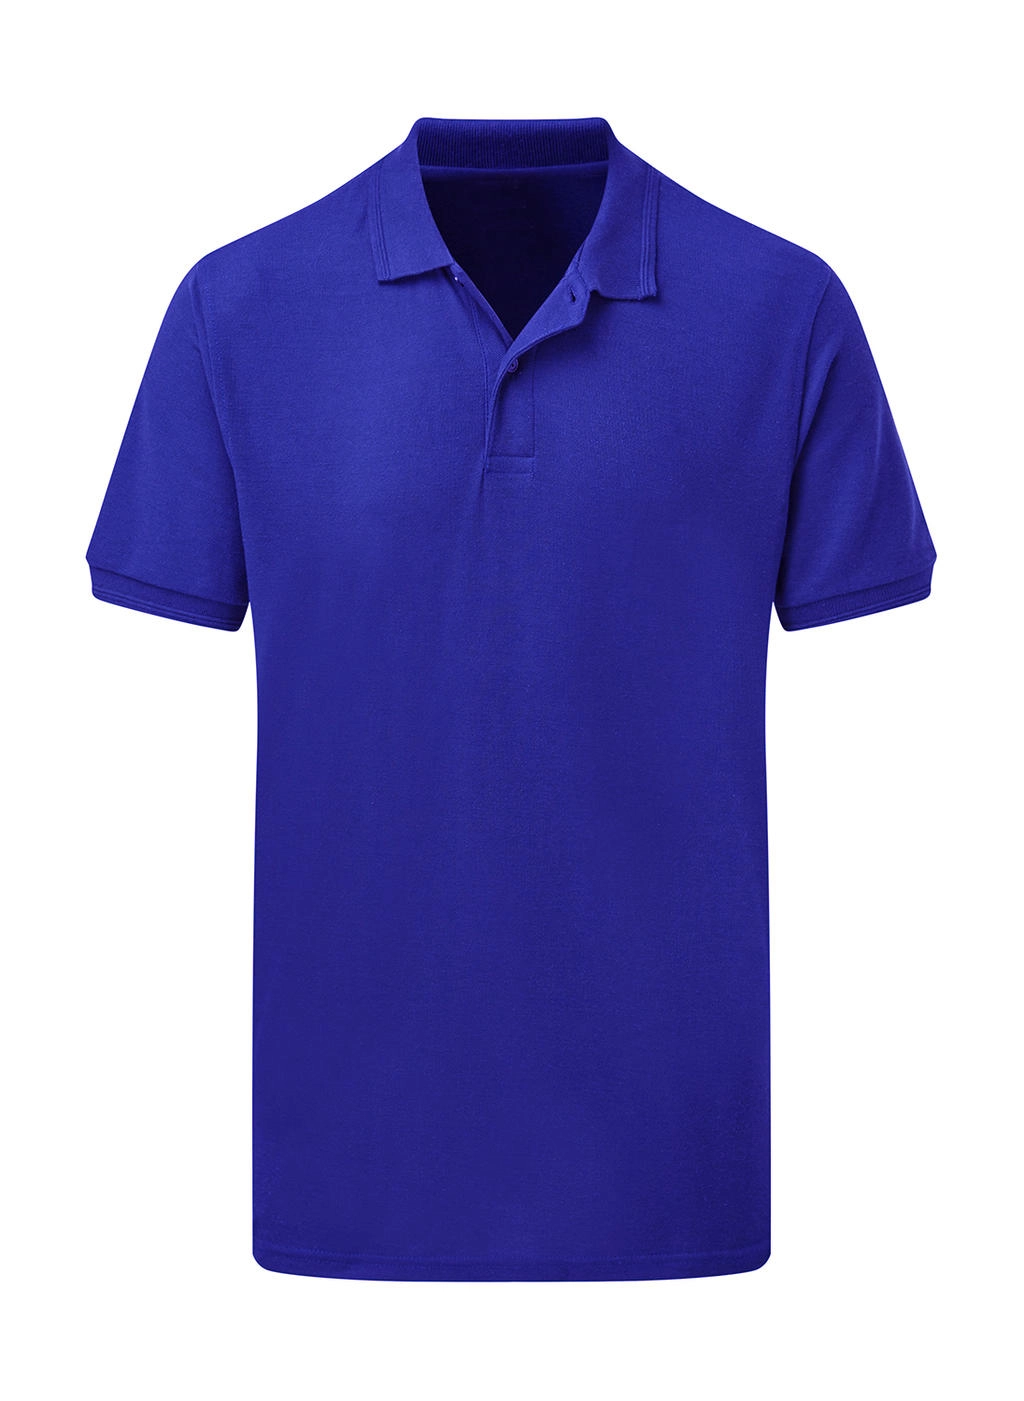 Poly Cotton Polo Men zum Besticken und Bedrucken in der Farbe Royal Blue mit Ihren Logo, Schriftzug oder Motiv.